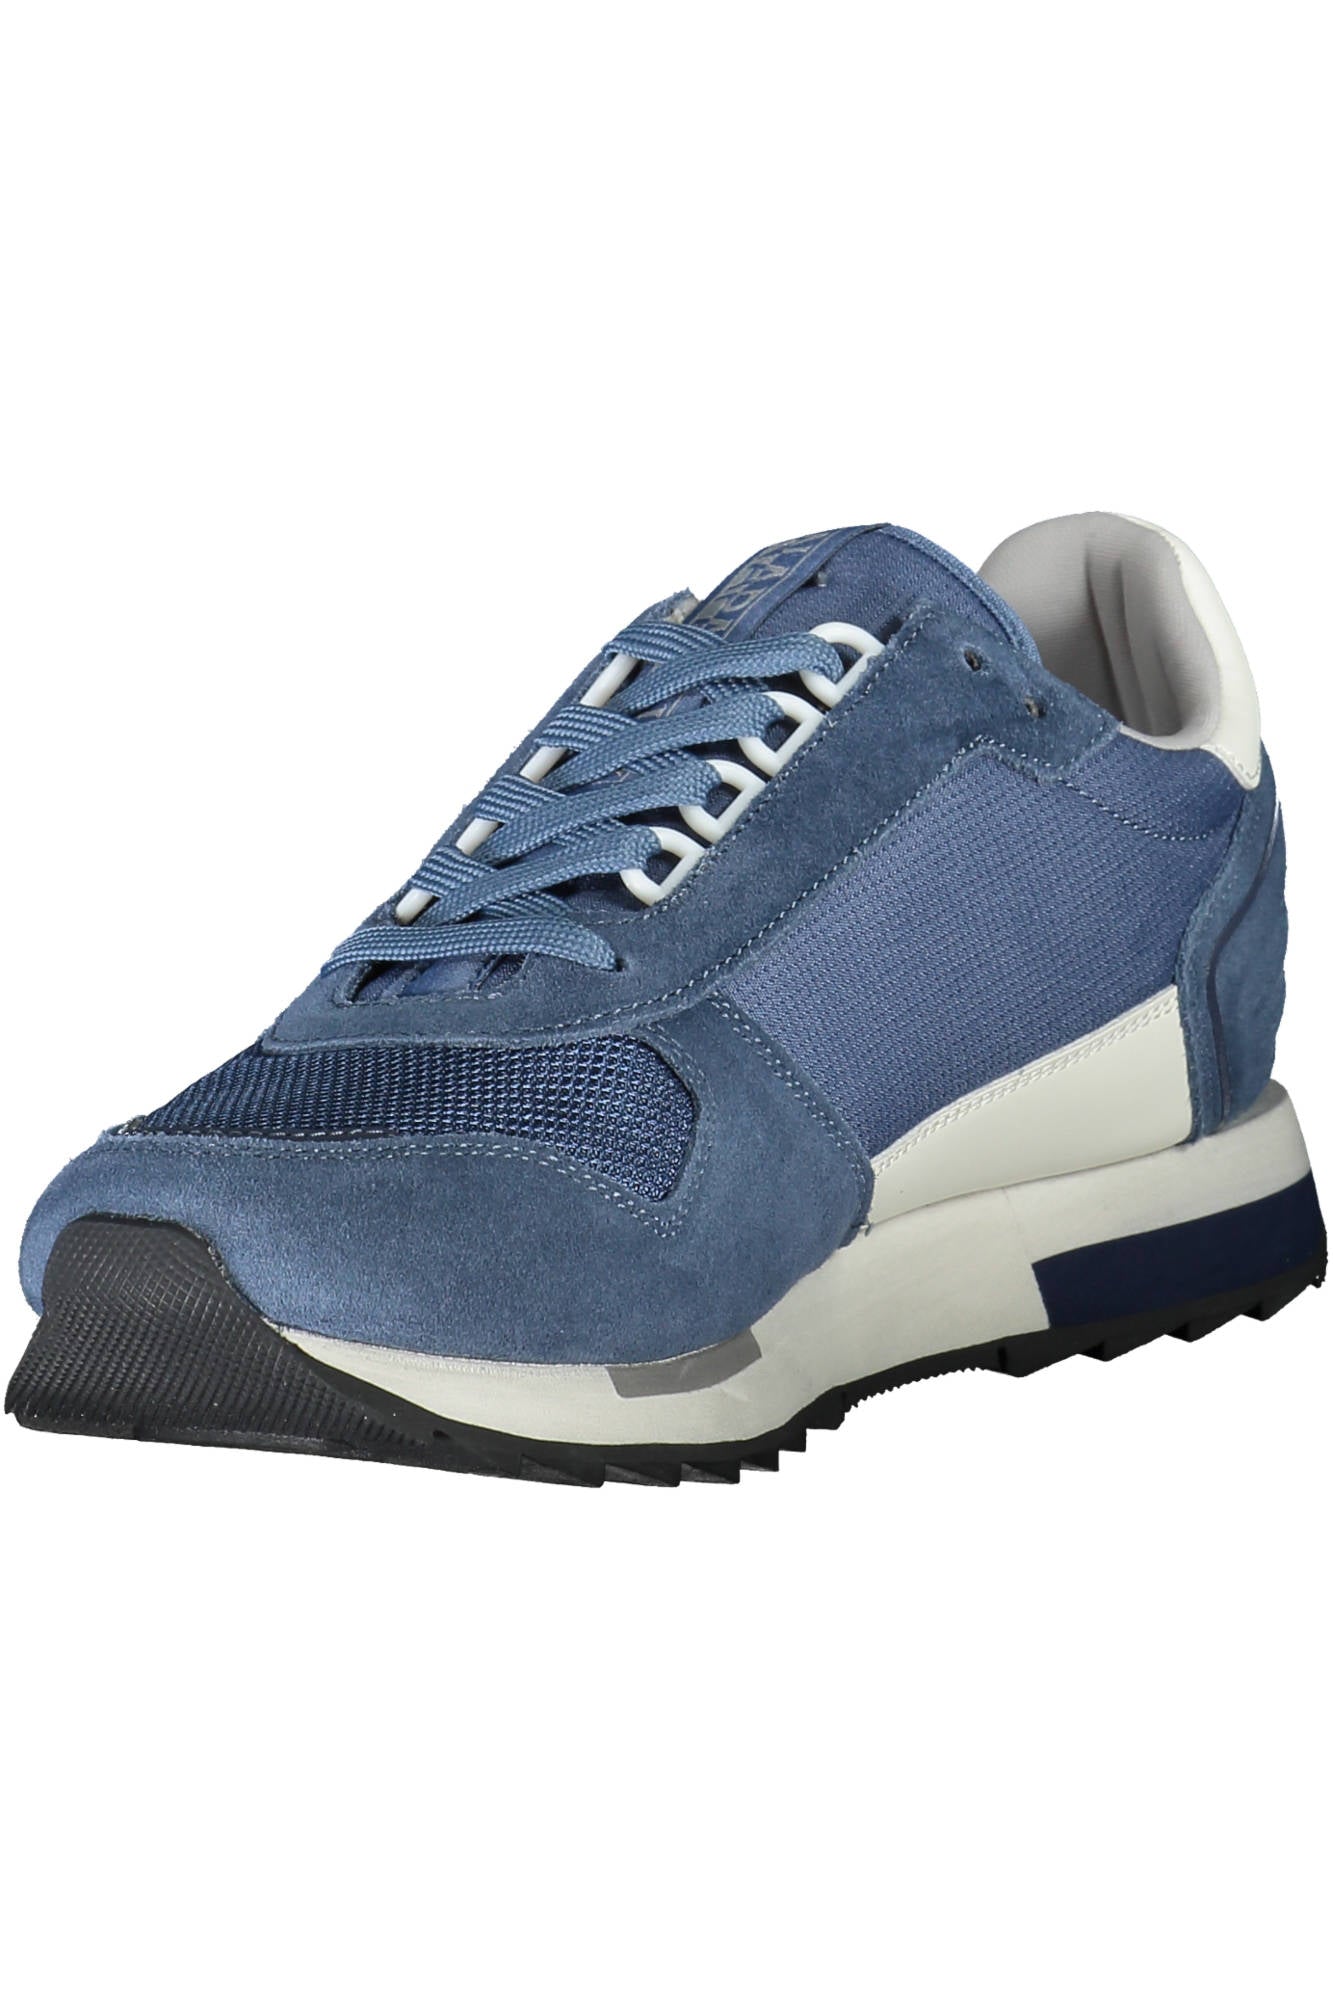 Napapijri Blue Sneakers - Fizigo